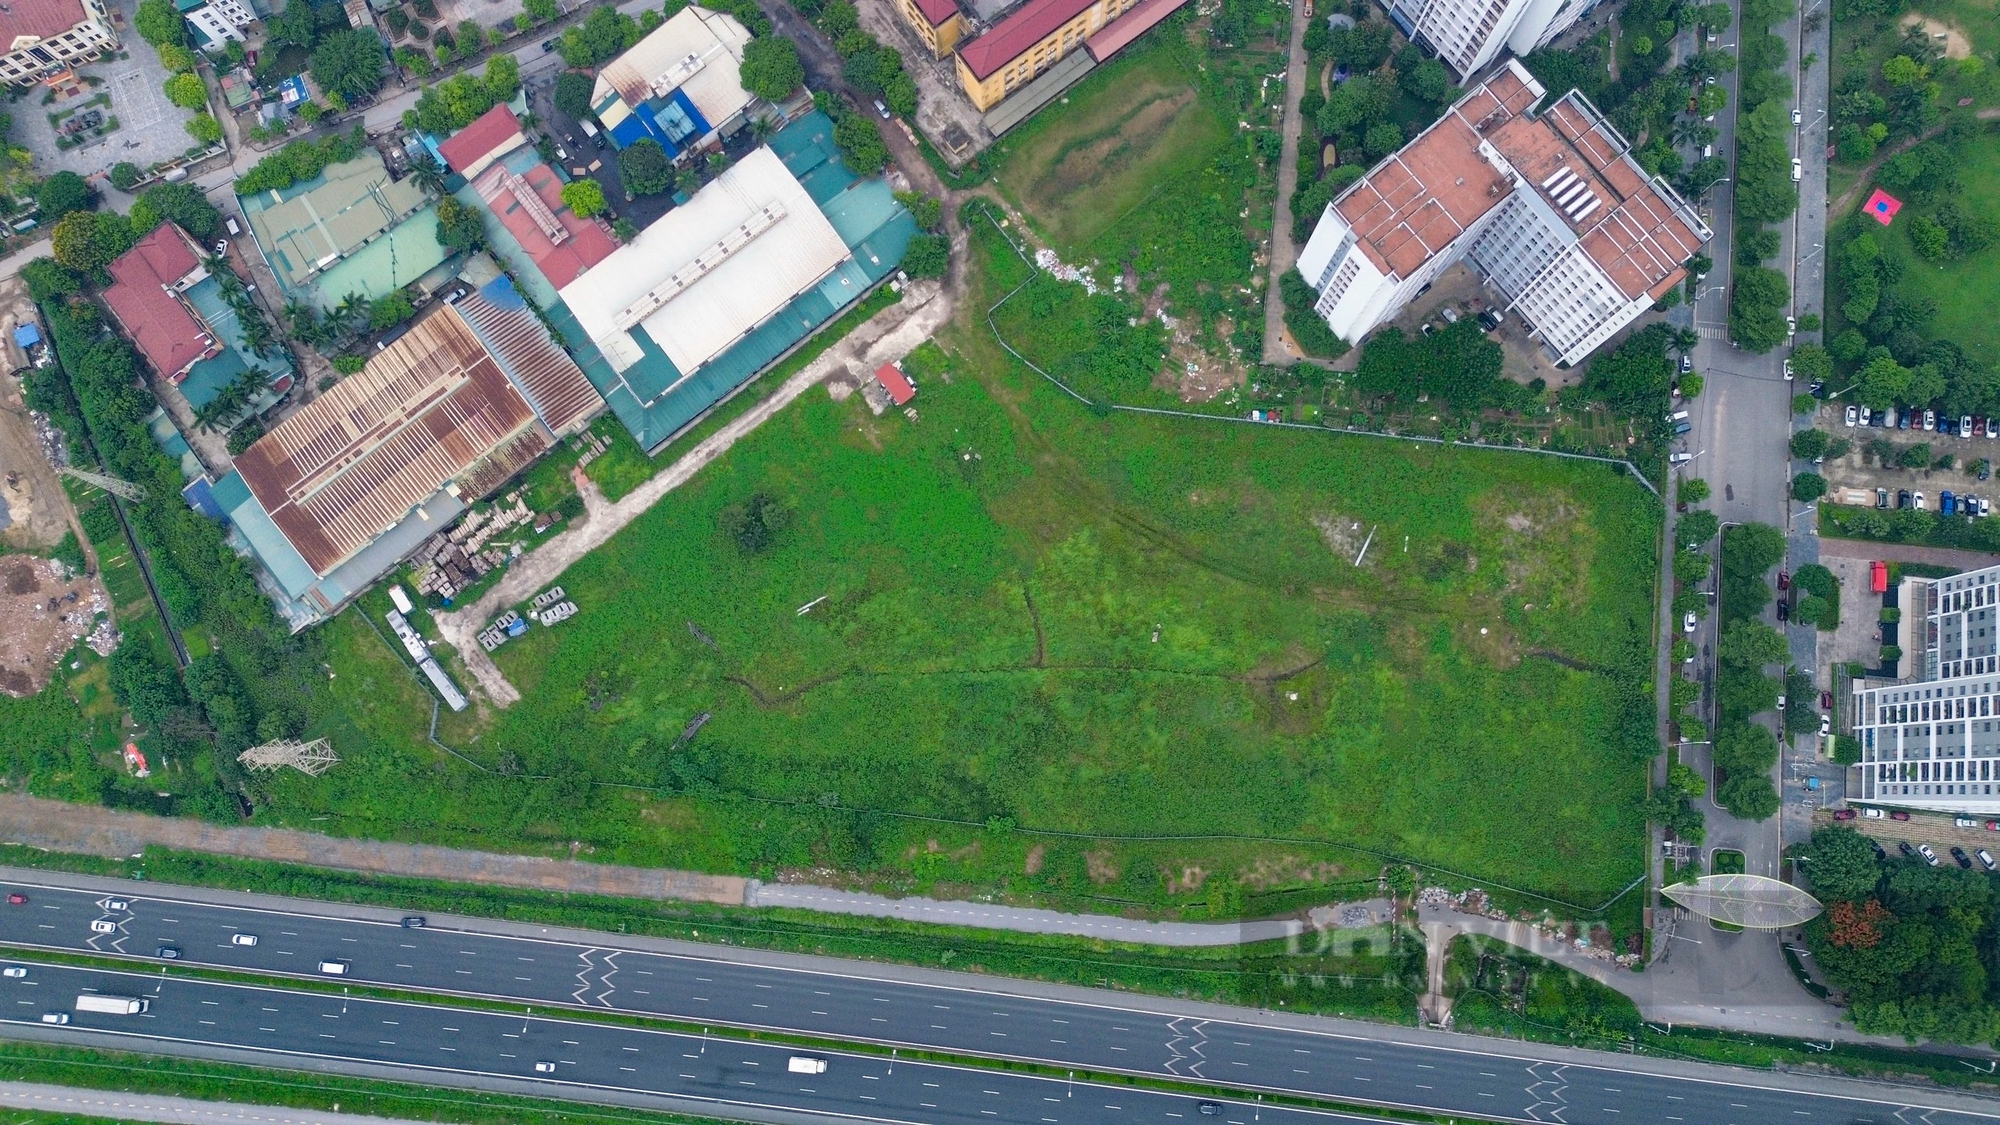 Sau gần 2 thập kỷ, cỏ vẫn mọc xanh tốt tại vị trí xây bệnh viện tiêu chuẩn quốc tế 5 sao ở Hà Nội- Ảnh 2.